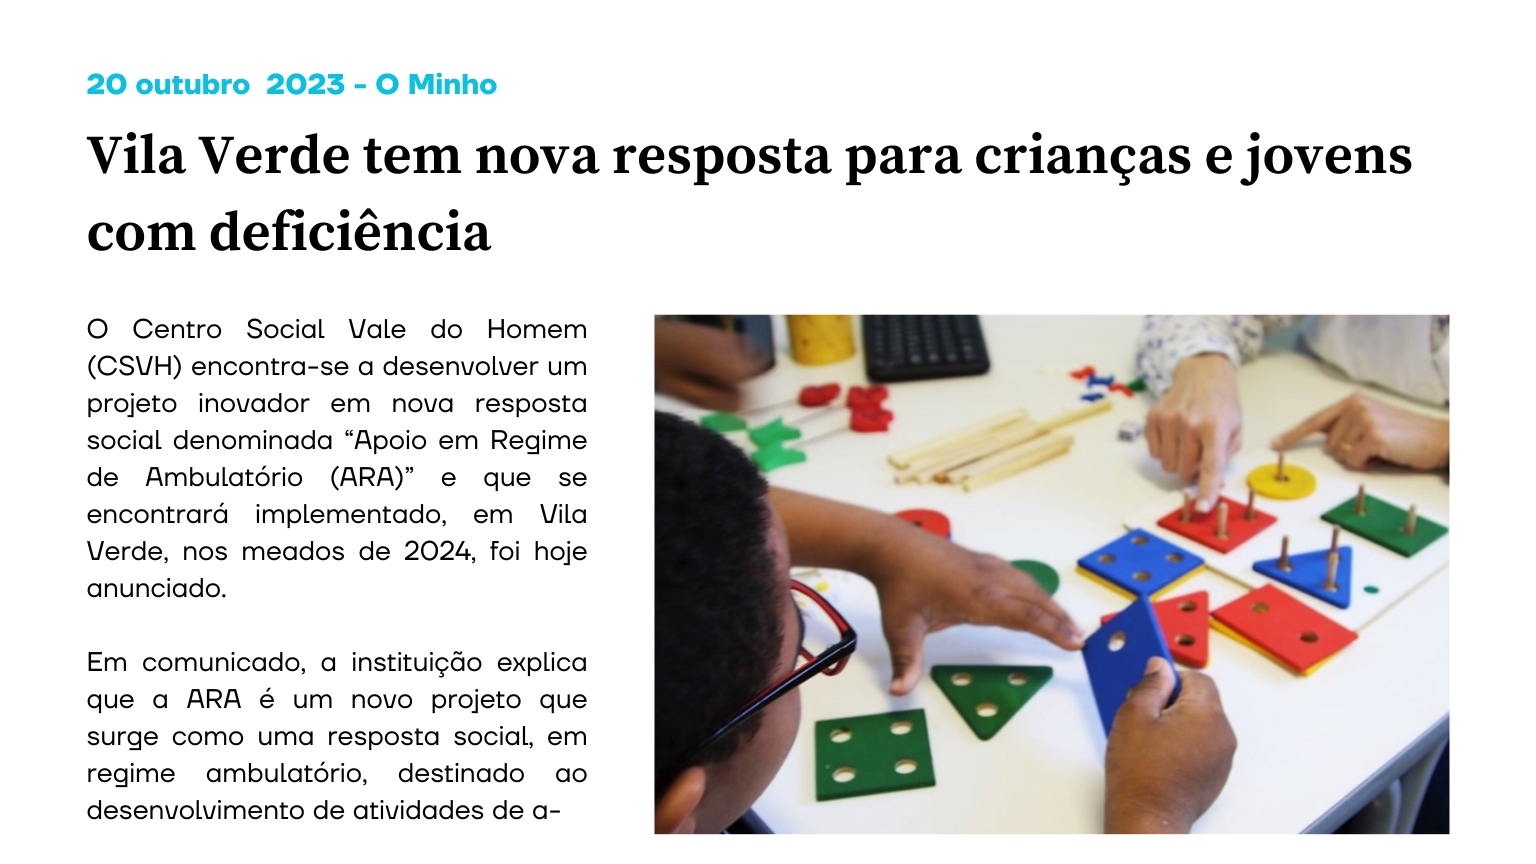 Vila Verde tem nova resposta para crianças e jovens com deficiência 2